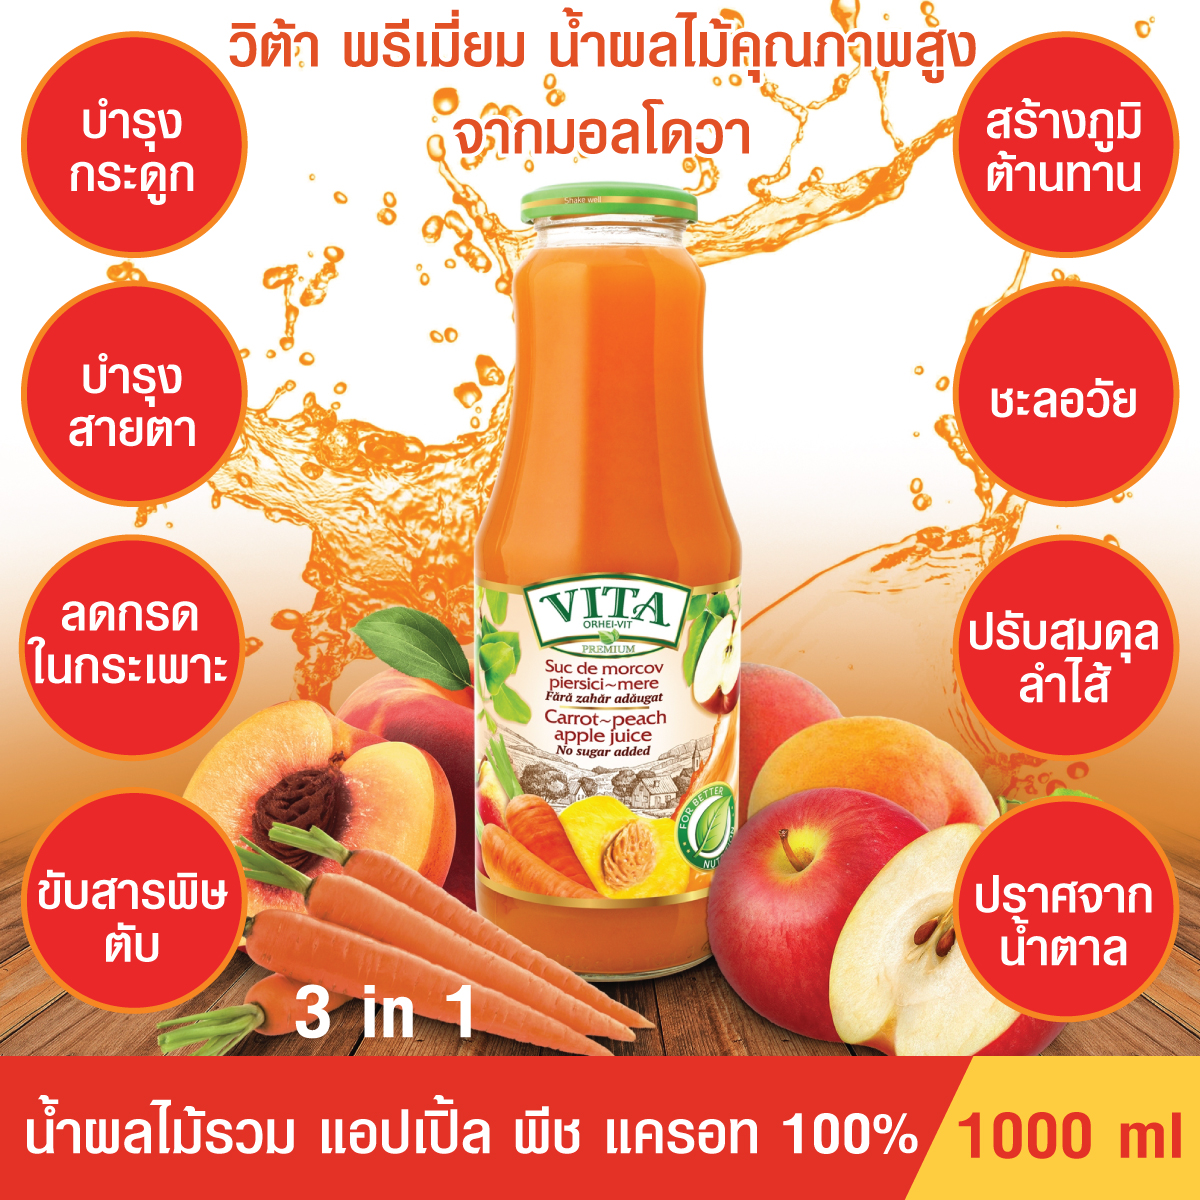 (ของแท้นำเข้า)VITA ORHEI-VIT Carrot peach apple Juice No sugar added 1000 mL น้ำผลไม้รวม แครอท พีช แอปเปิ้ล แท้100% ไม่มีน้ำตาล สร้างภูมิต้านทาน ล้างสารพิษ ชะลอวัย